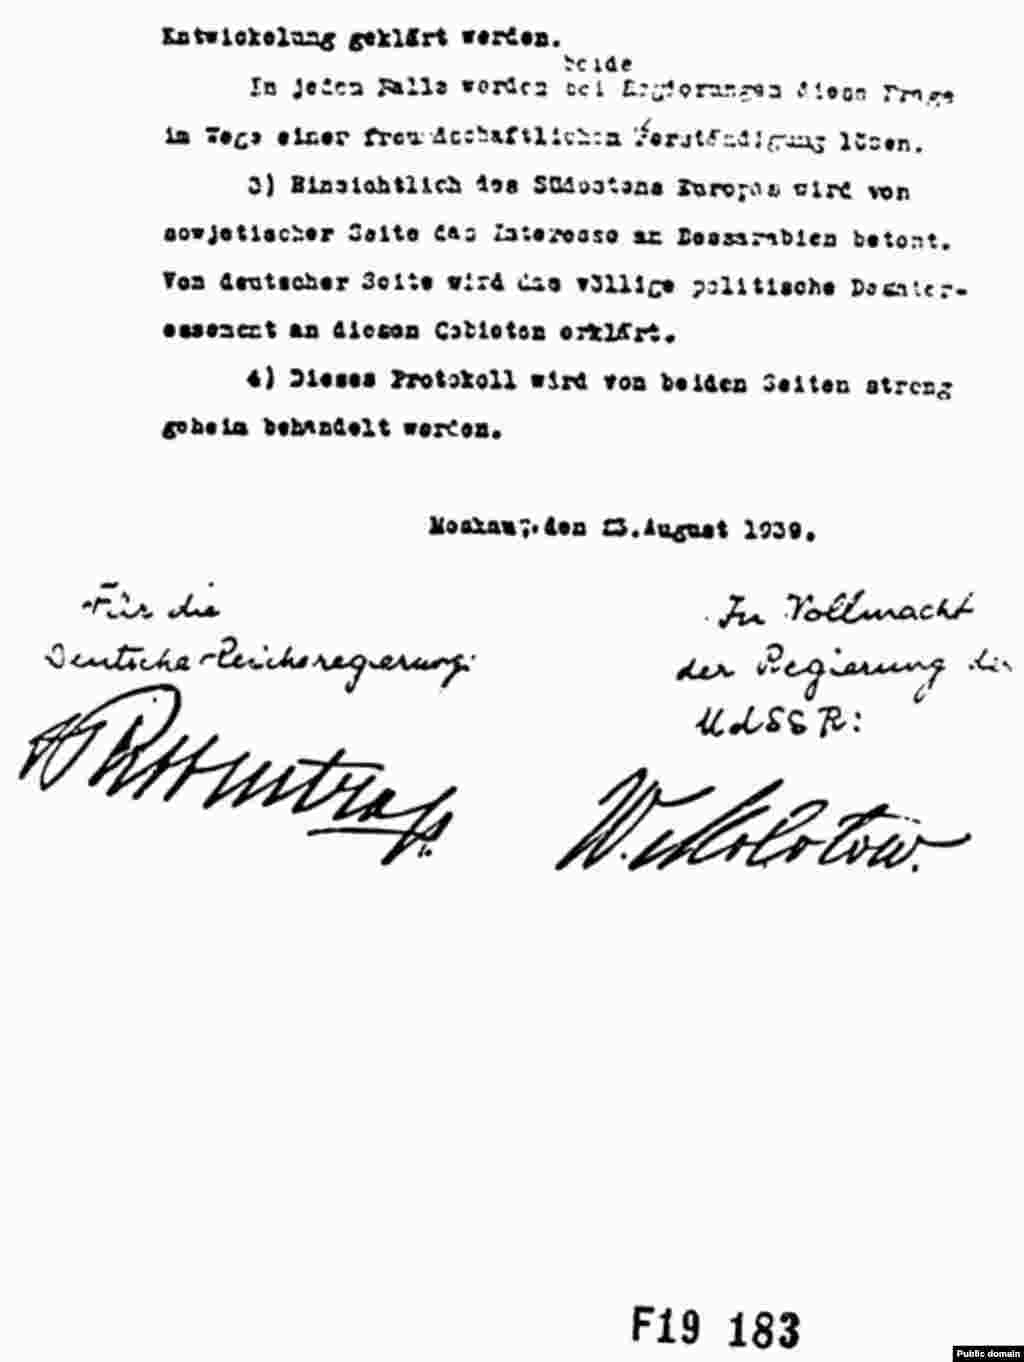 Pagina finală din copia germană a Protocolului secret adițional, ce împărțea Europa Centrală și Răsăriteană în &bdquo;sfere de influență&rdquo;.